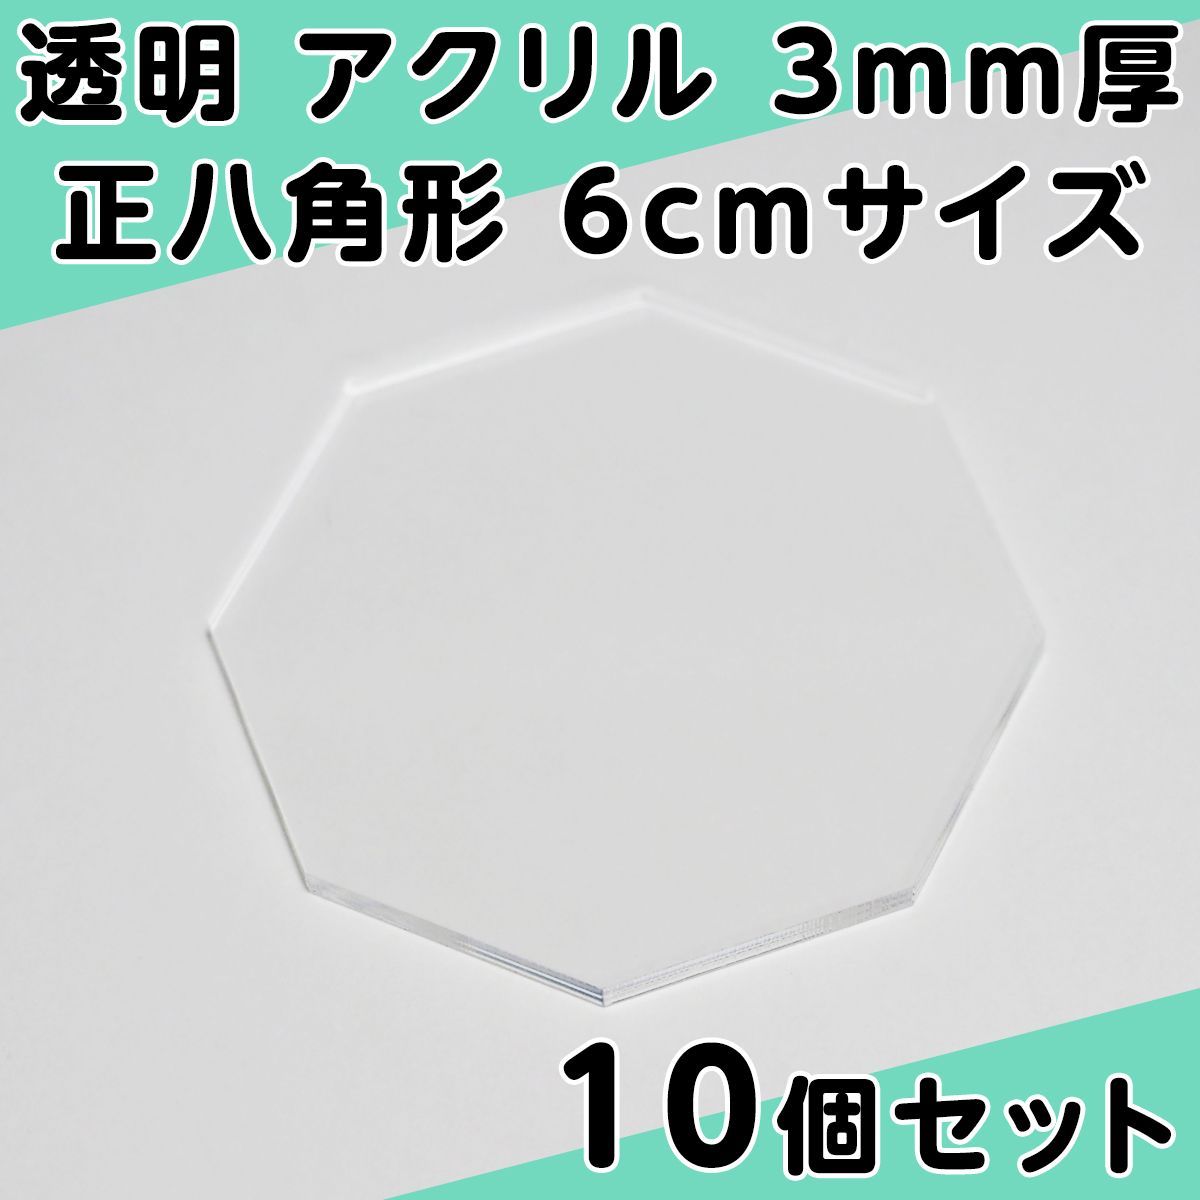 透明 アクリル 5mm厚 正八角形 7cmサイズ 10個セット